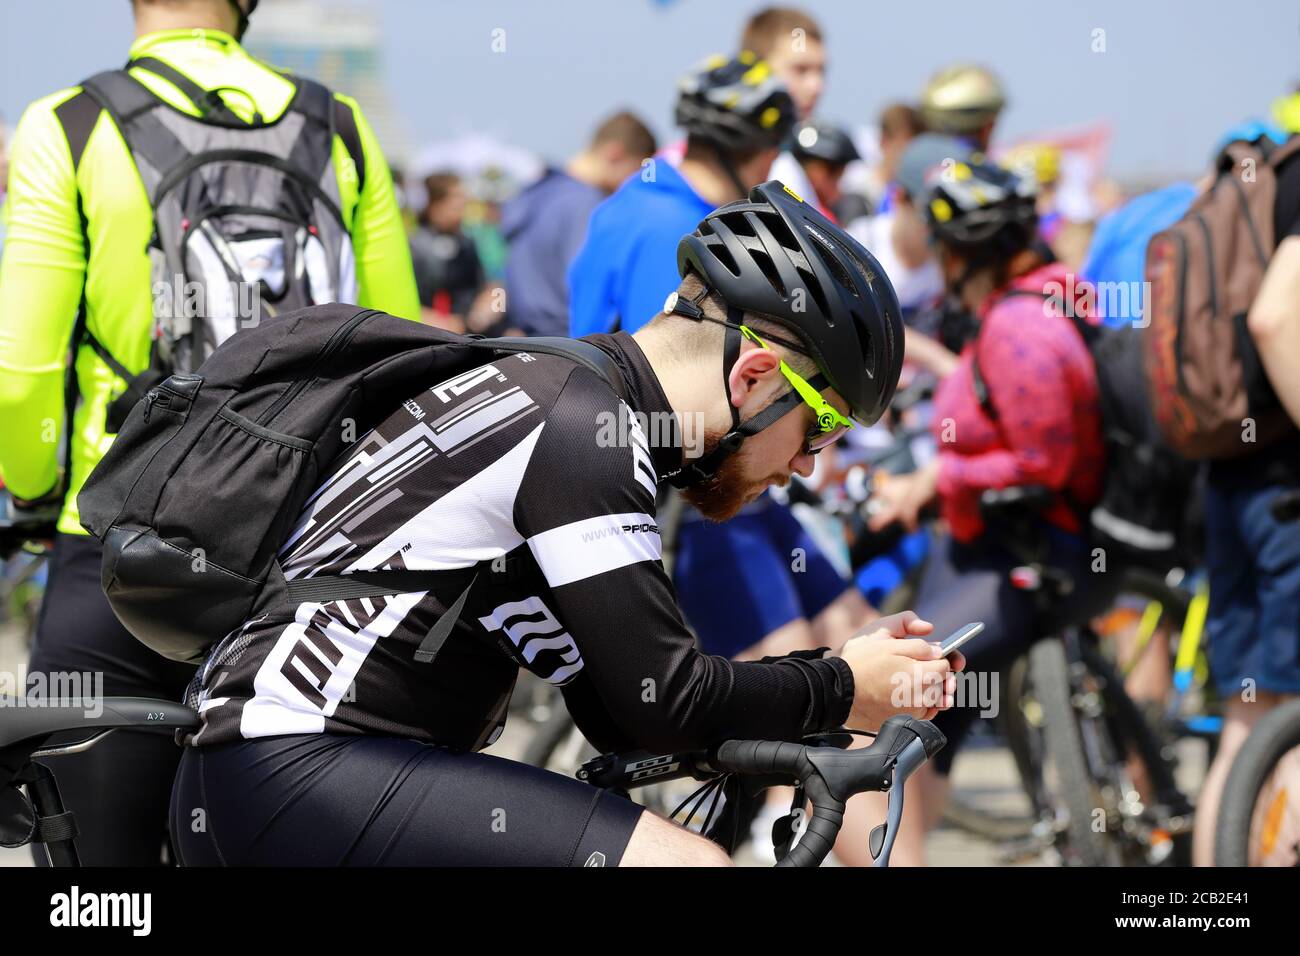 Ville de Dnipro, Ukraine 26 05 2019. Un jeune homme s'assoit dans un casque sur un vélo et regarde dans un smartphone. Cyclisme, événement sportif à Dnepr. Banque D'Images